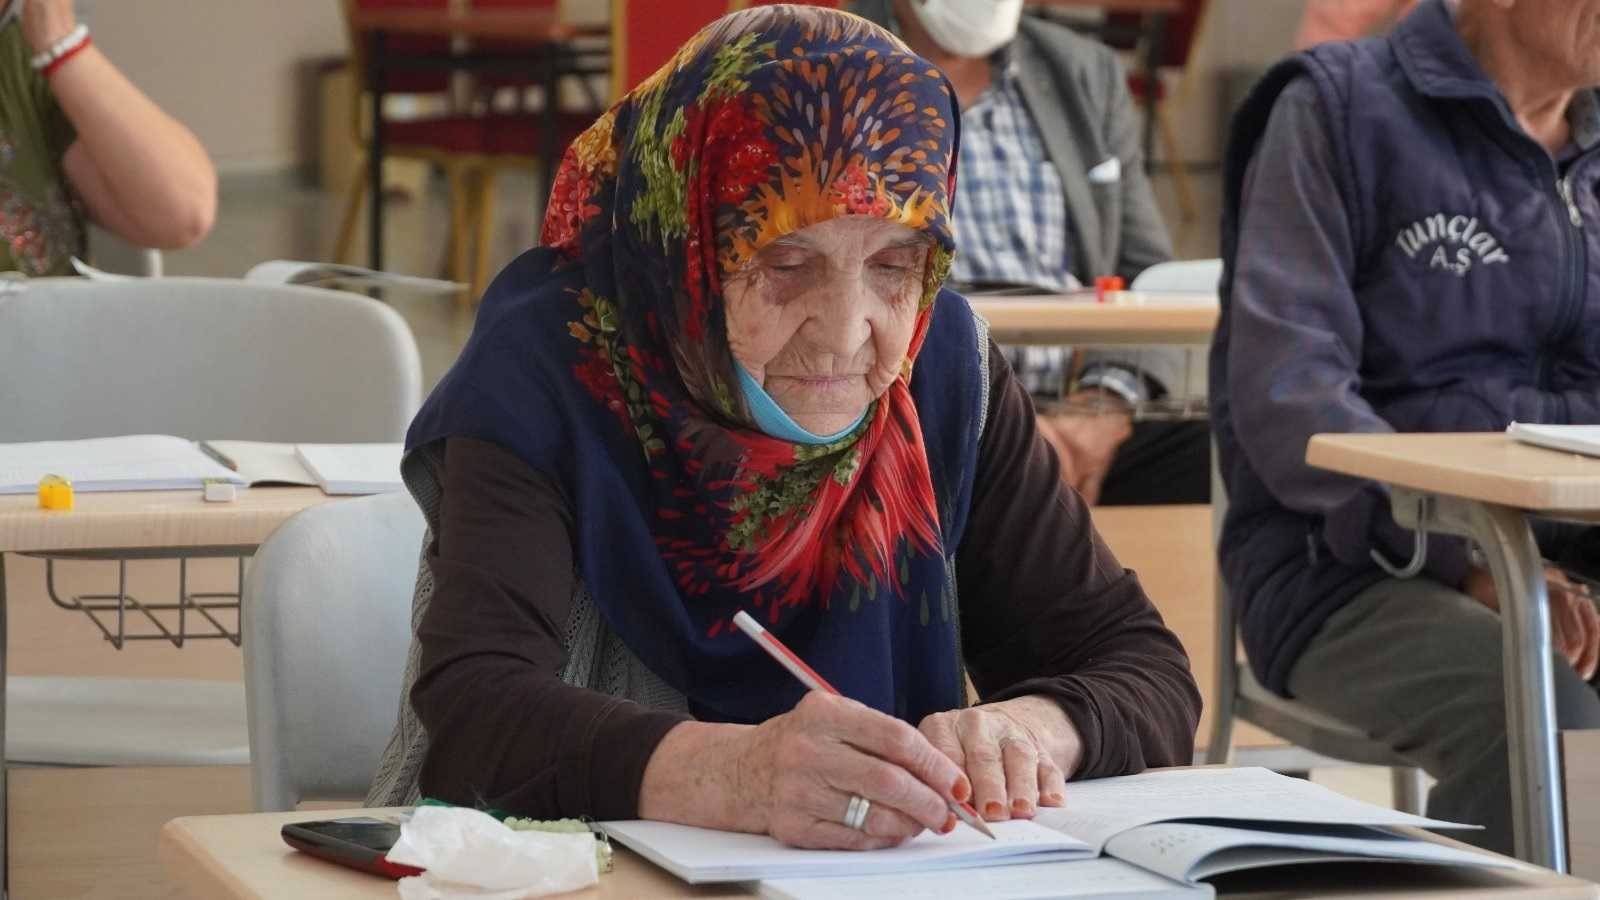 Huzurevindeki yaşlılar okuma yazma eğitimlerine başladı #ankara